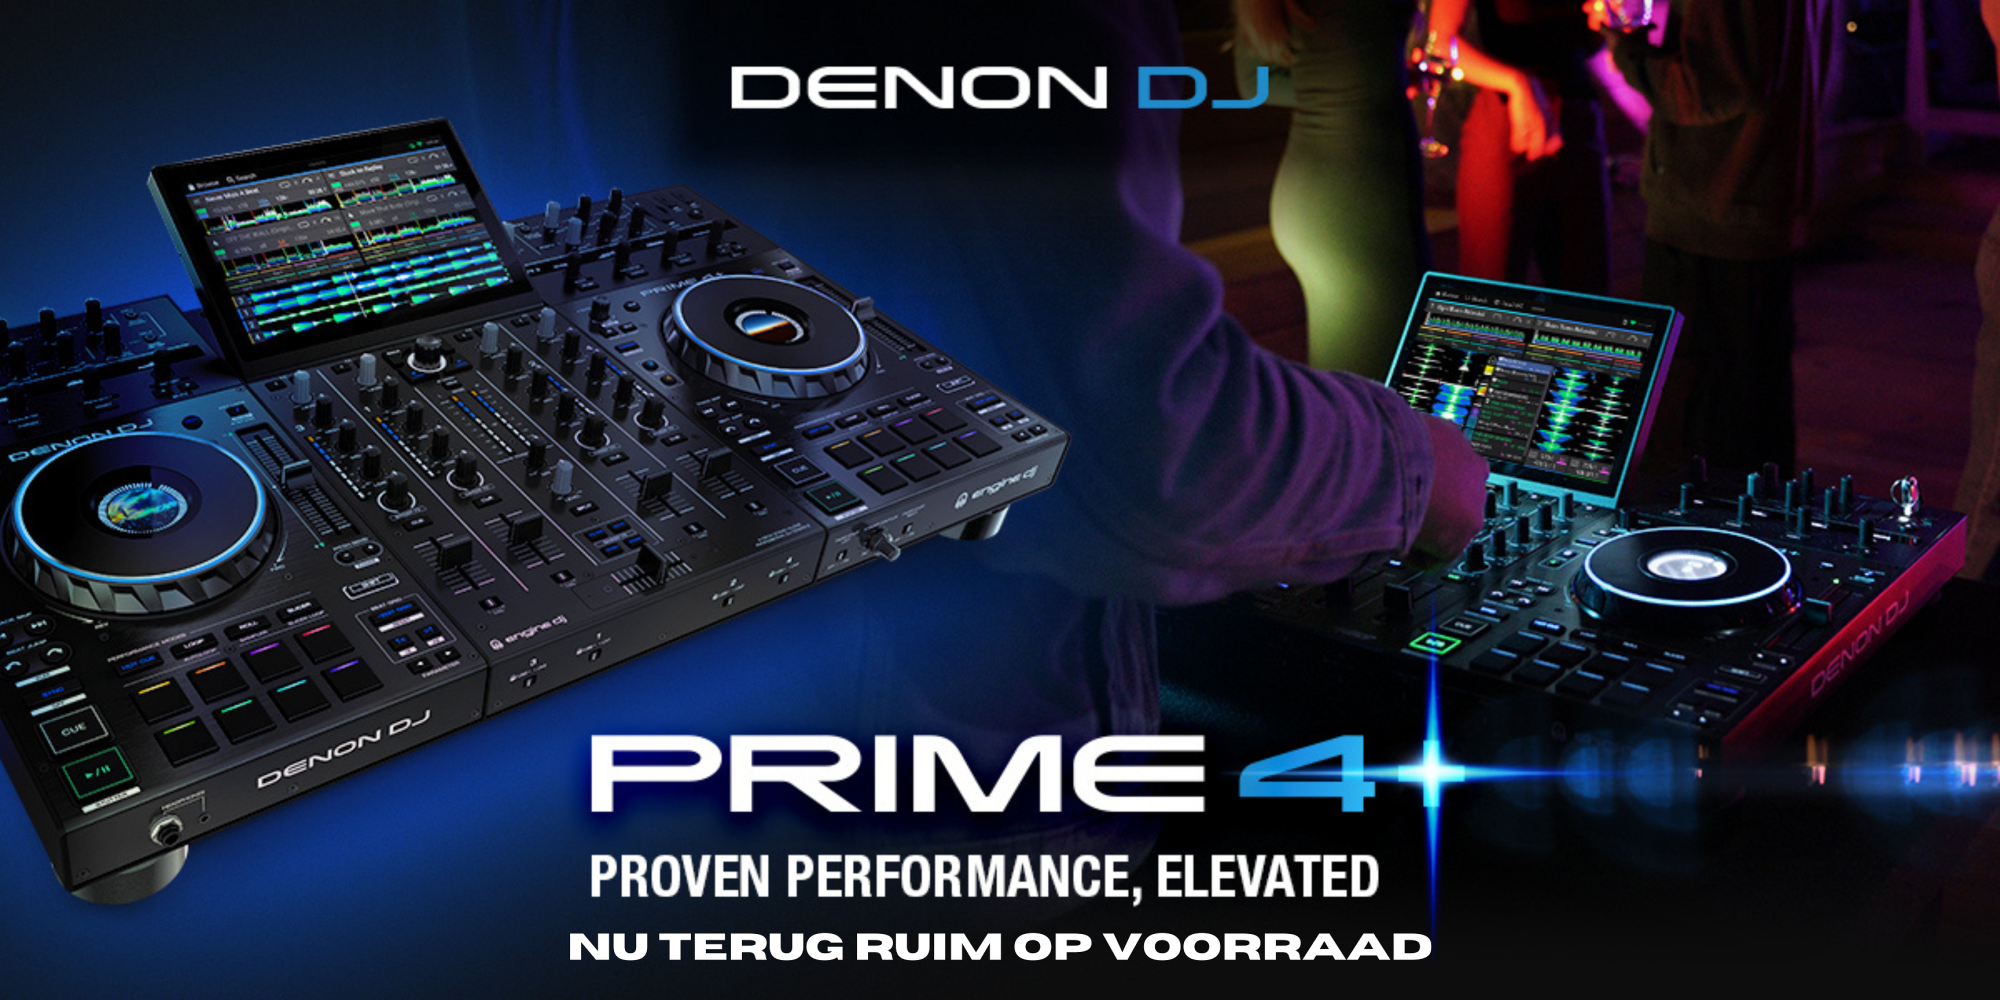 Pioneer DJ PLX-CRSS12 - Platine vinyle professionnelle à